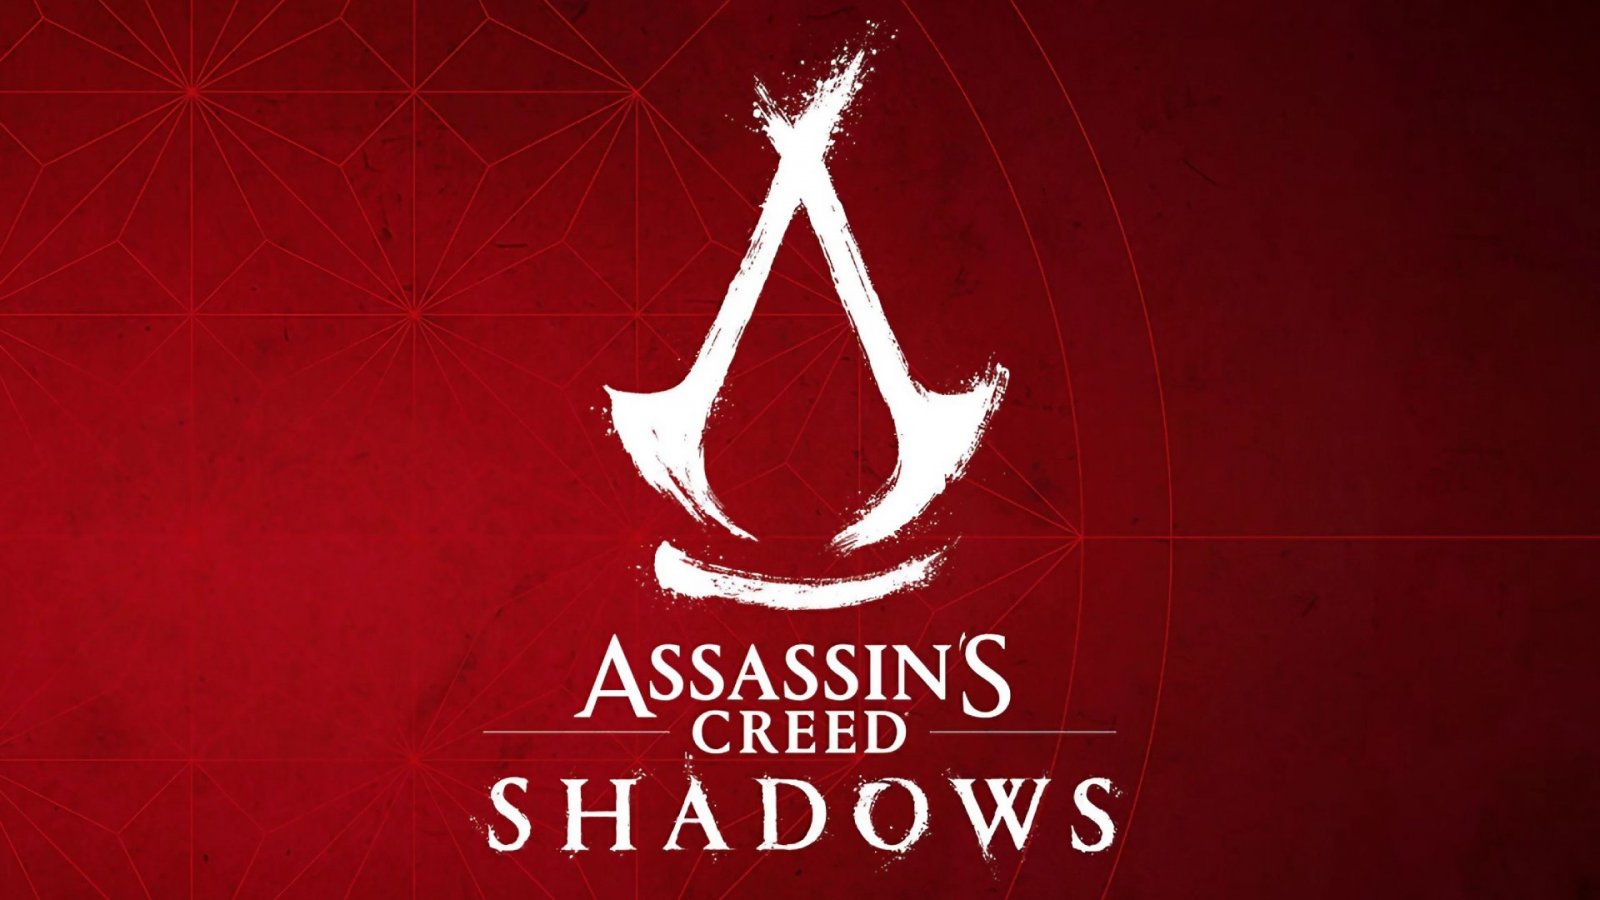 Assassin's Creed Shadows, ecco un piccolo assaggio del trailer e il logo ufficiale